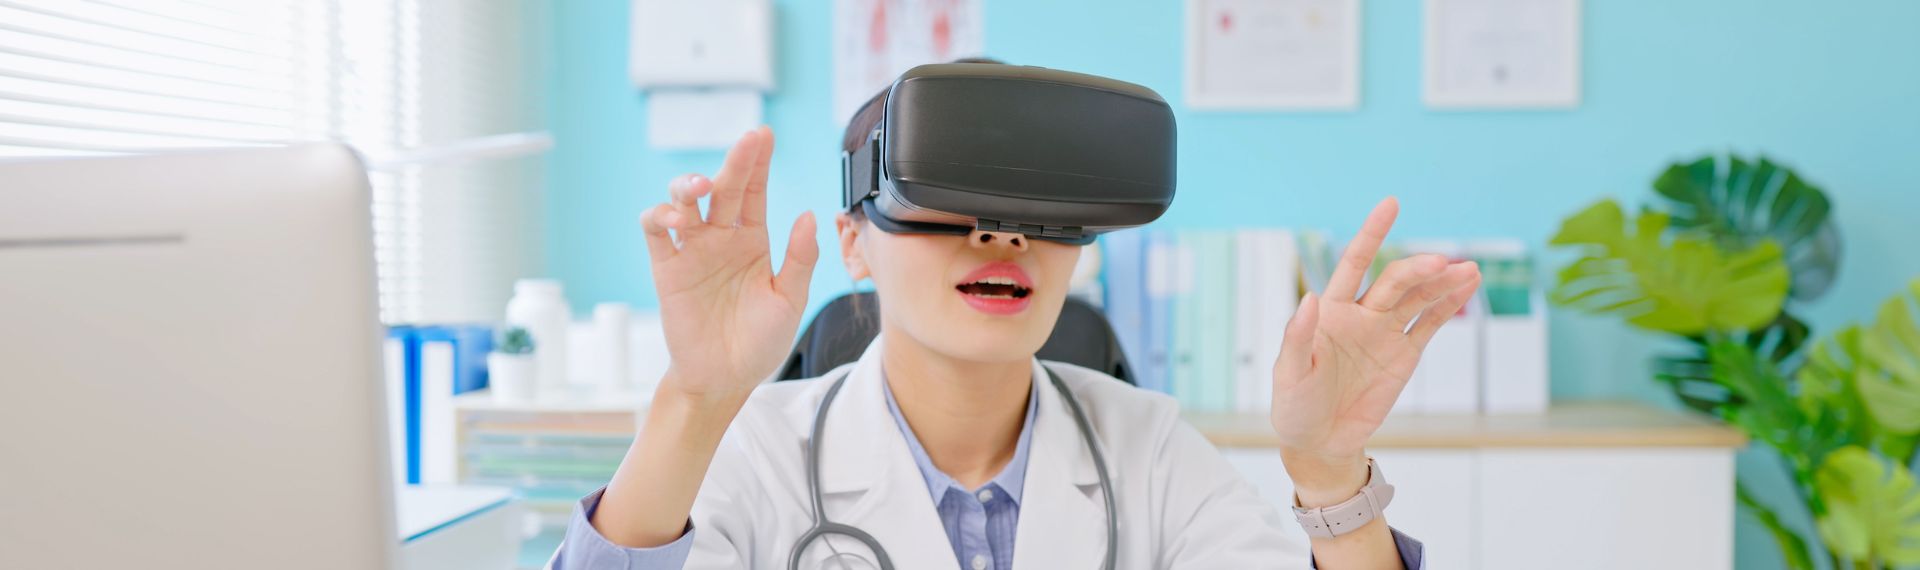 Medico che indossa un visore per la realtà virtuale